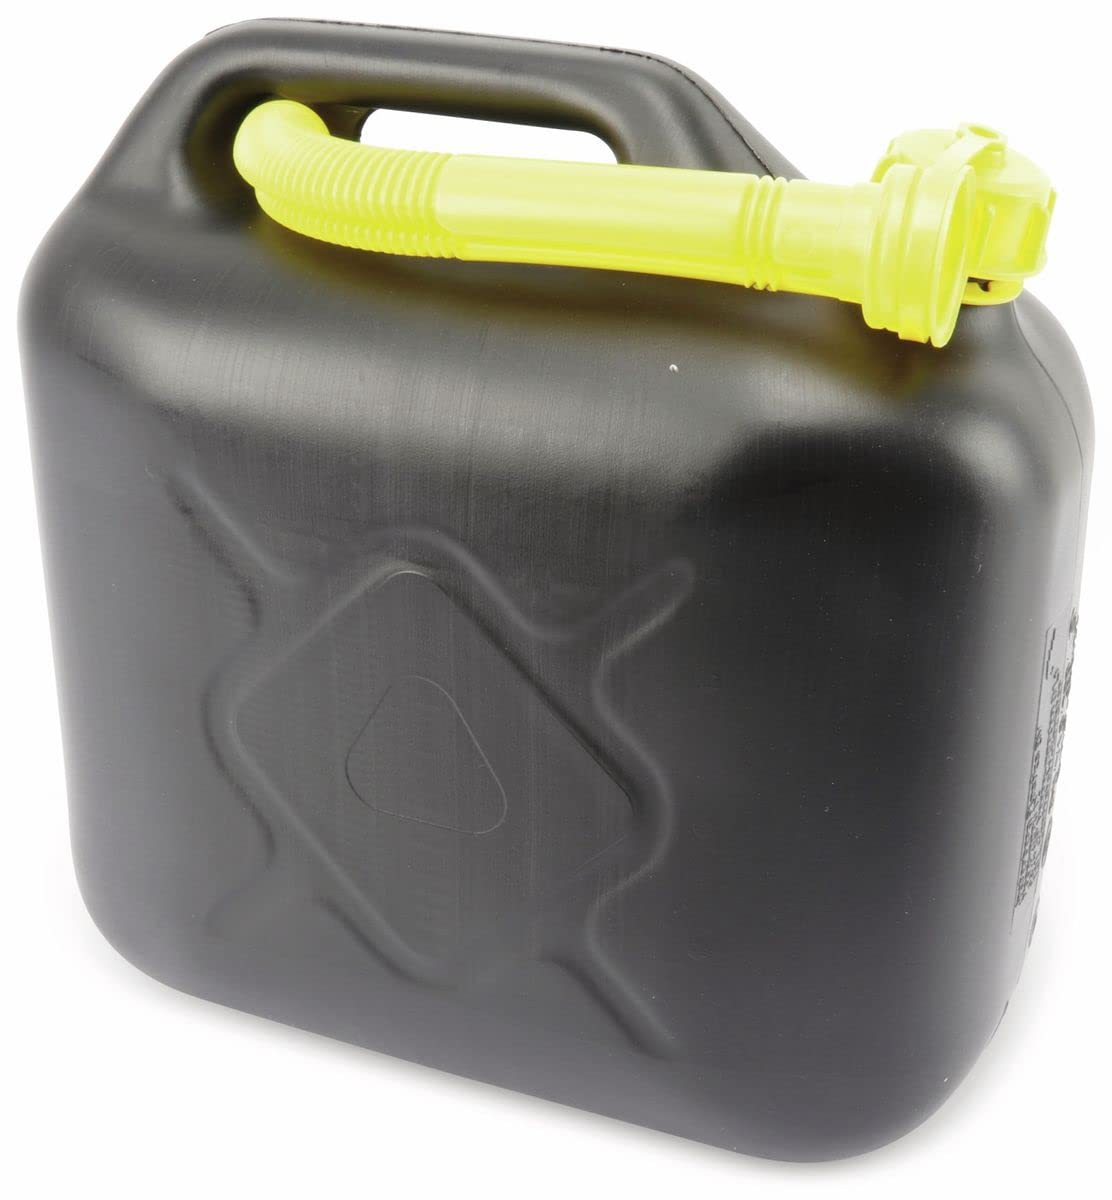 Dunlop Kanister 10L - Wasser- und Benzinkanister - UN-Zertifiziert für Gefährliche Flüssigkeiten - mit Ausgießer - Schwarz/Gelb von Dunlop Automotive